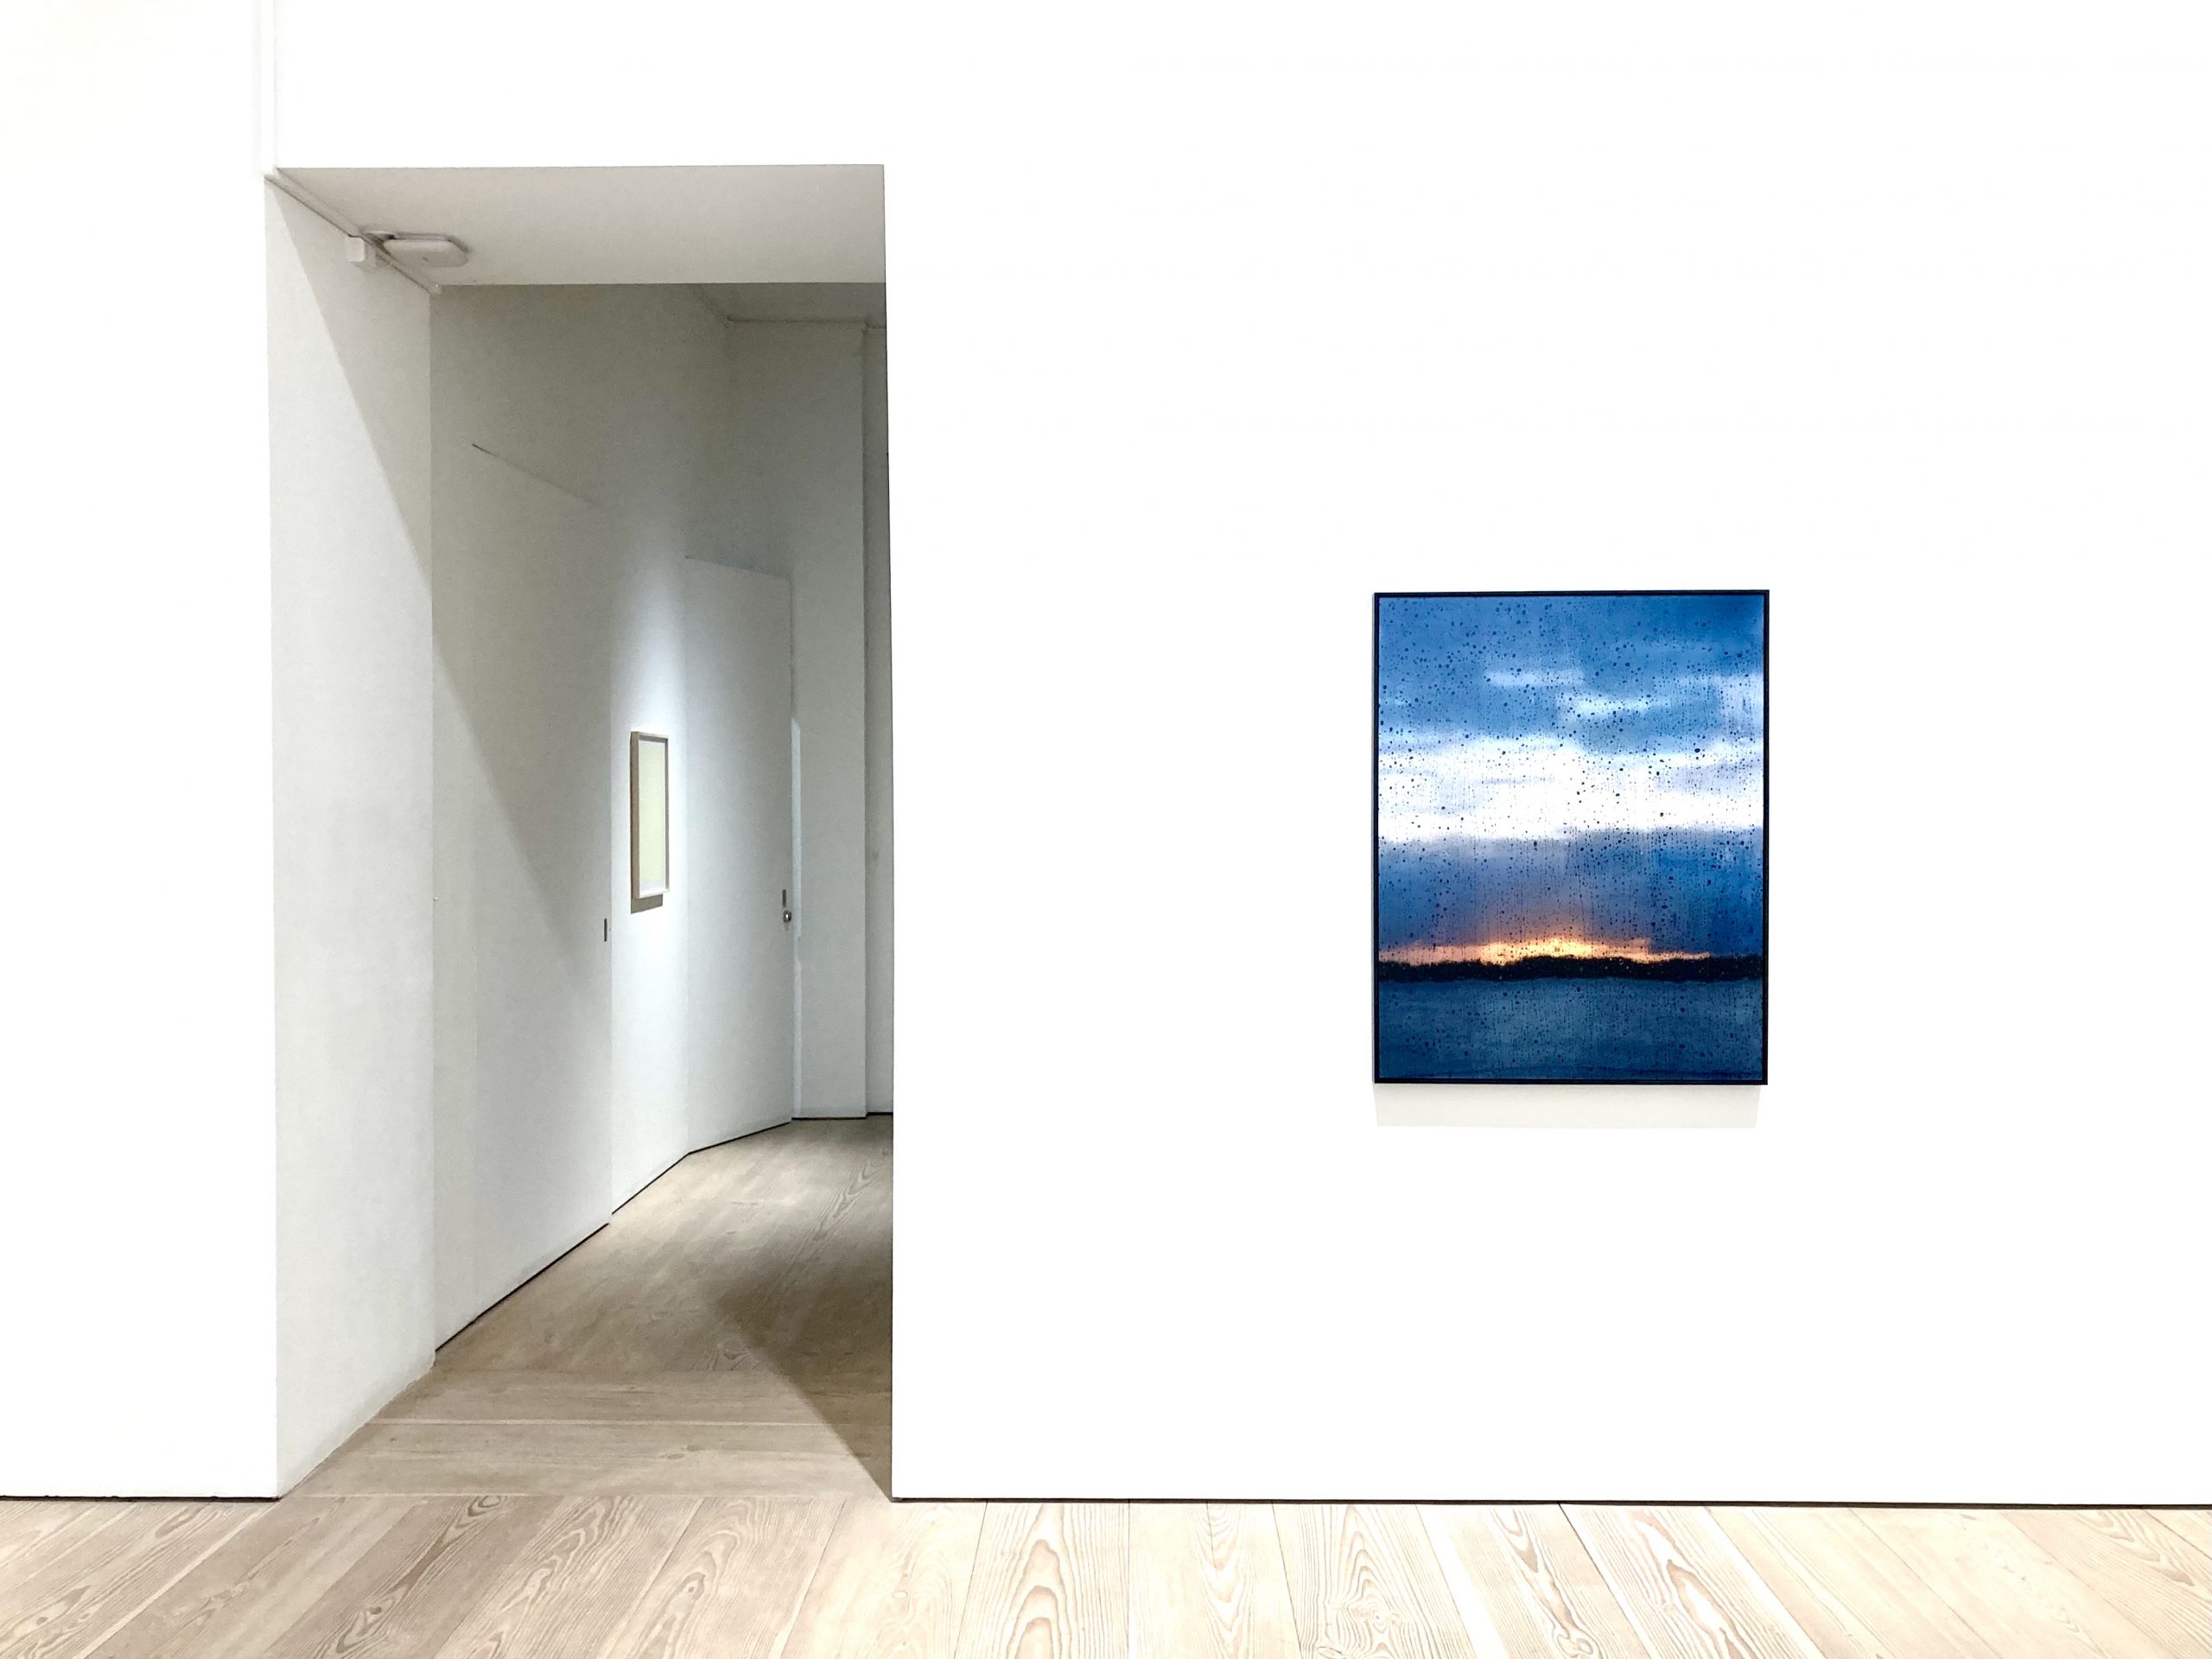 Jorma Puranen, "Seascapes after rain I", 2021. Pigment print, diasec, wooden frame. 102x81 cm